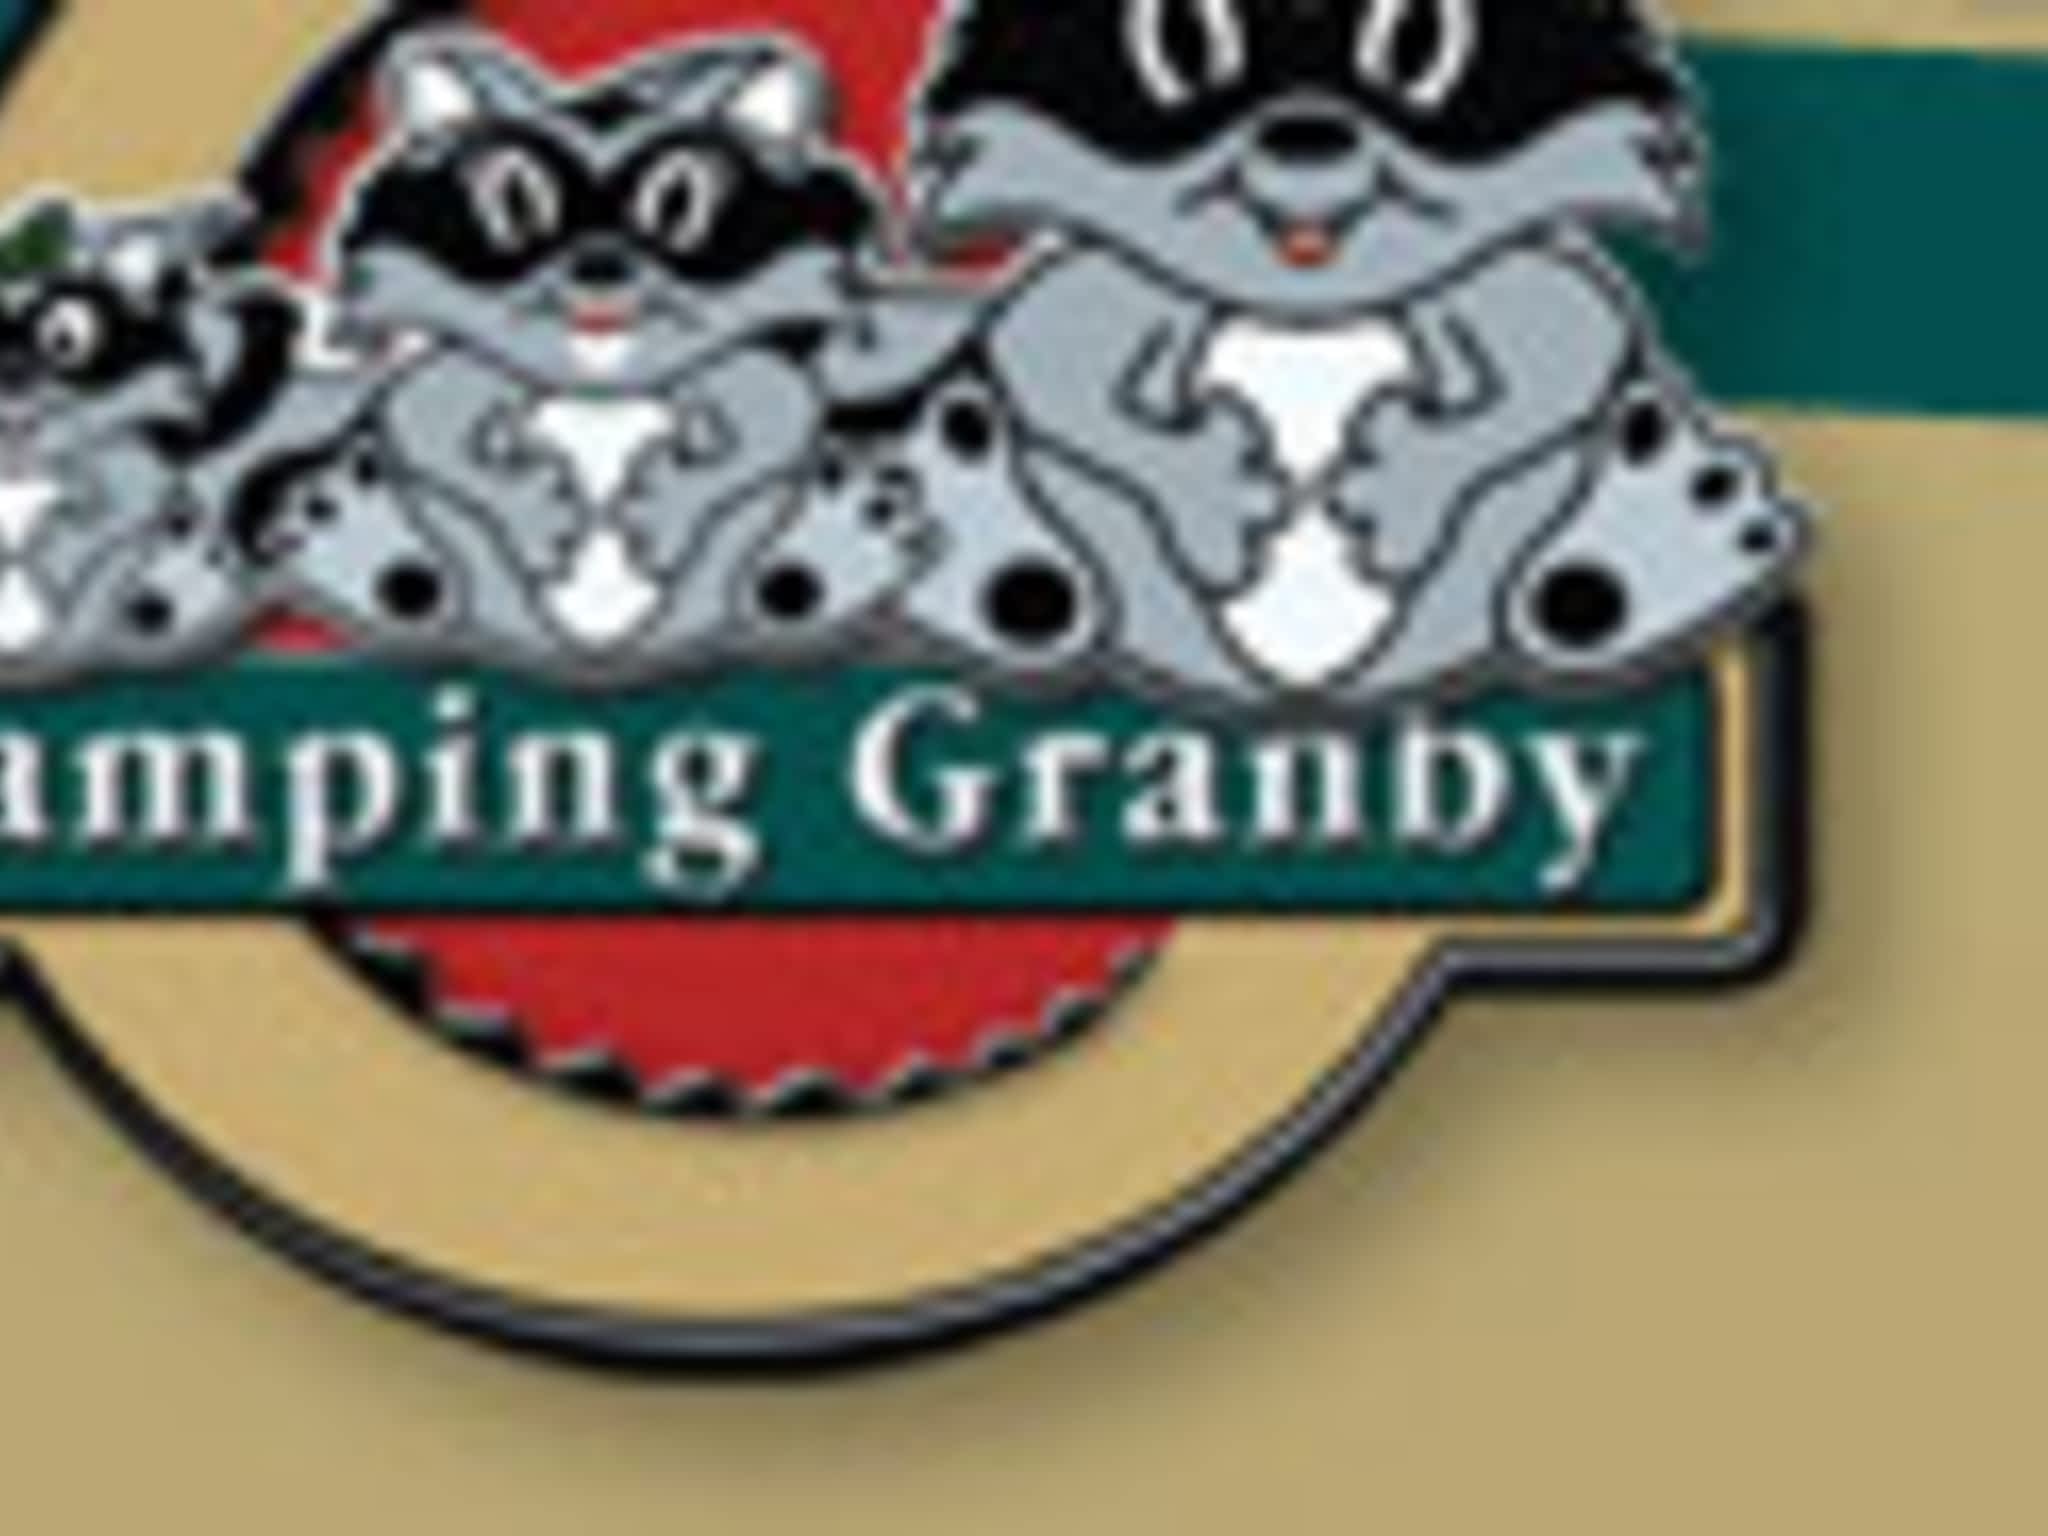 photo Camping Granby Inc